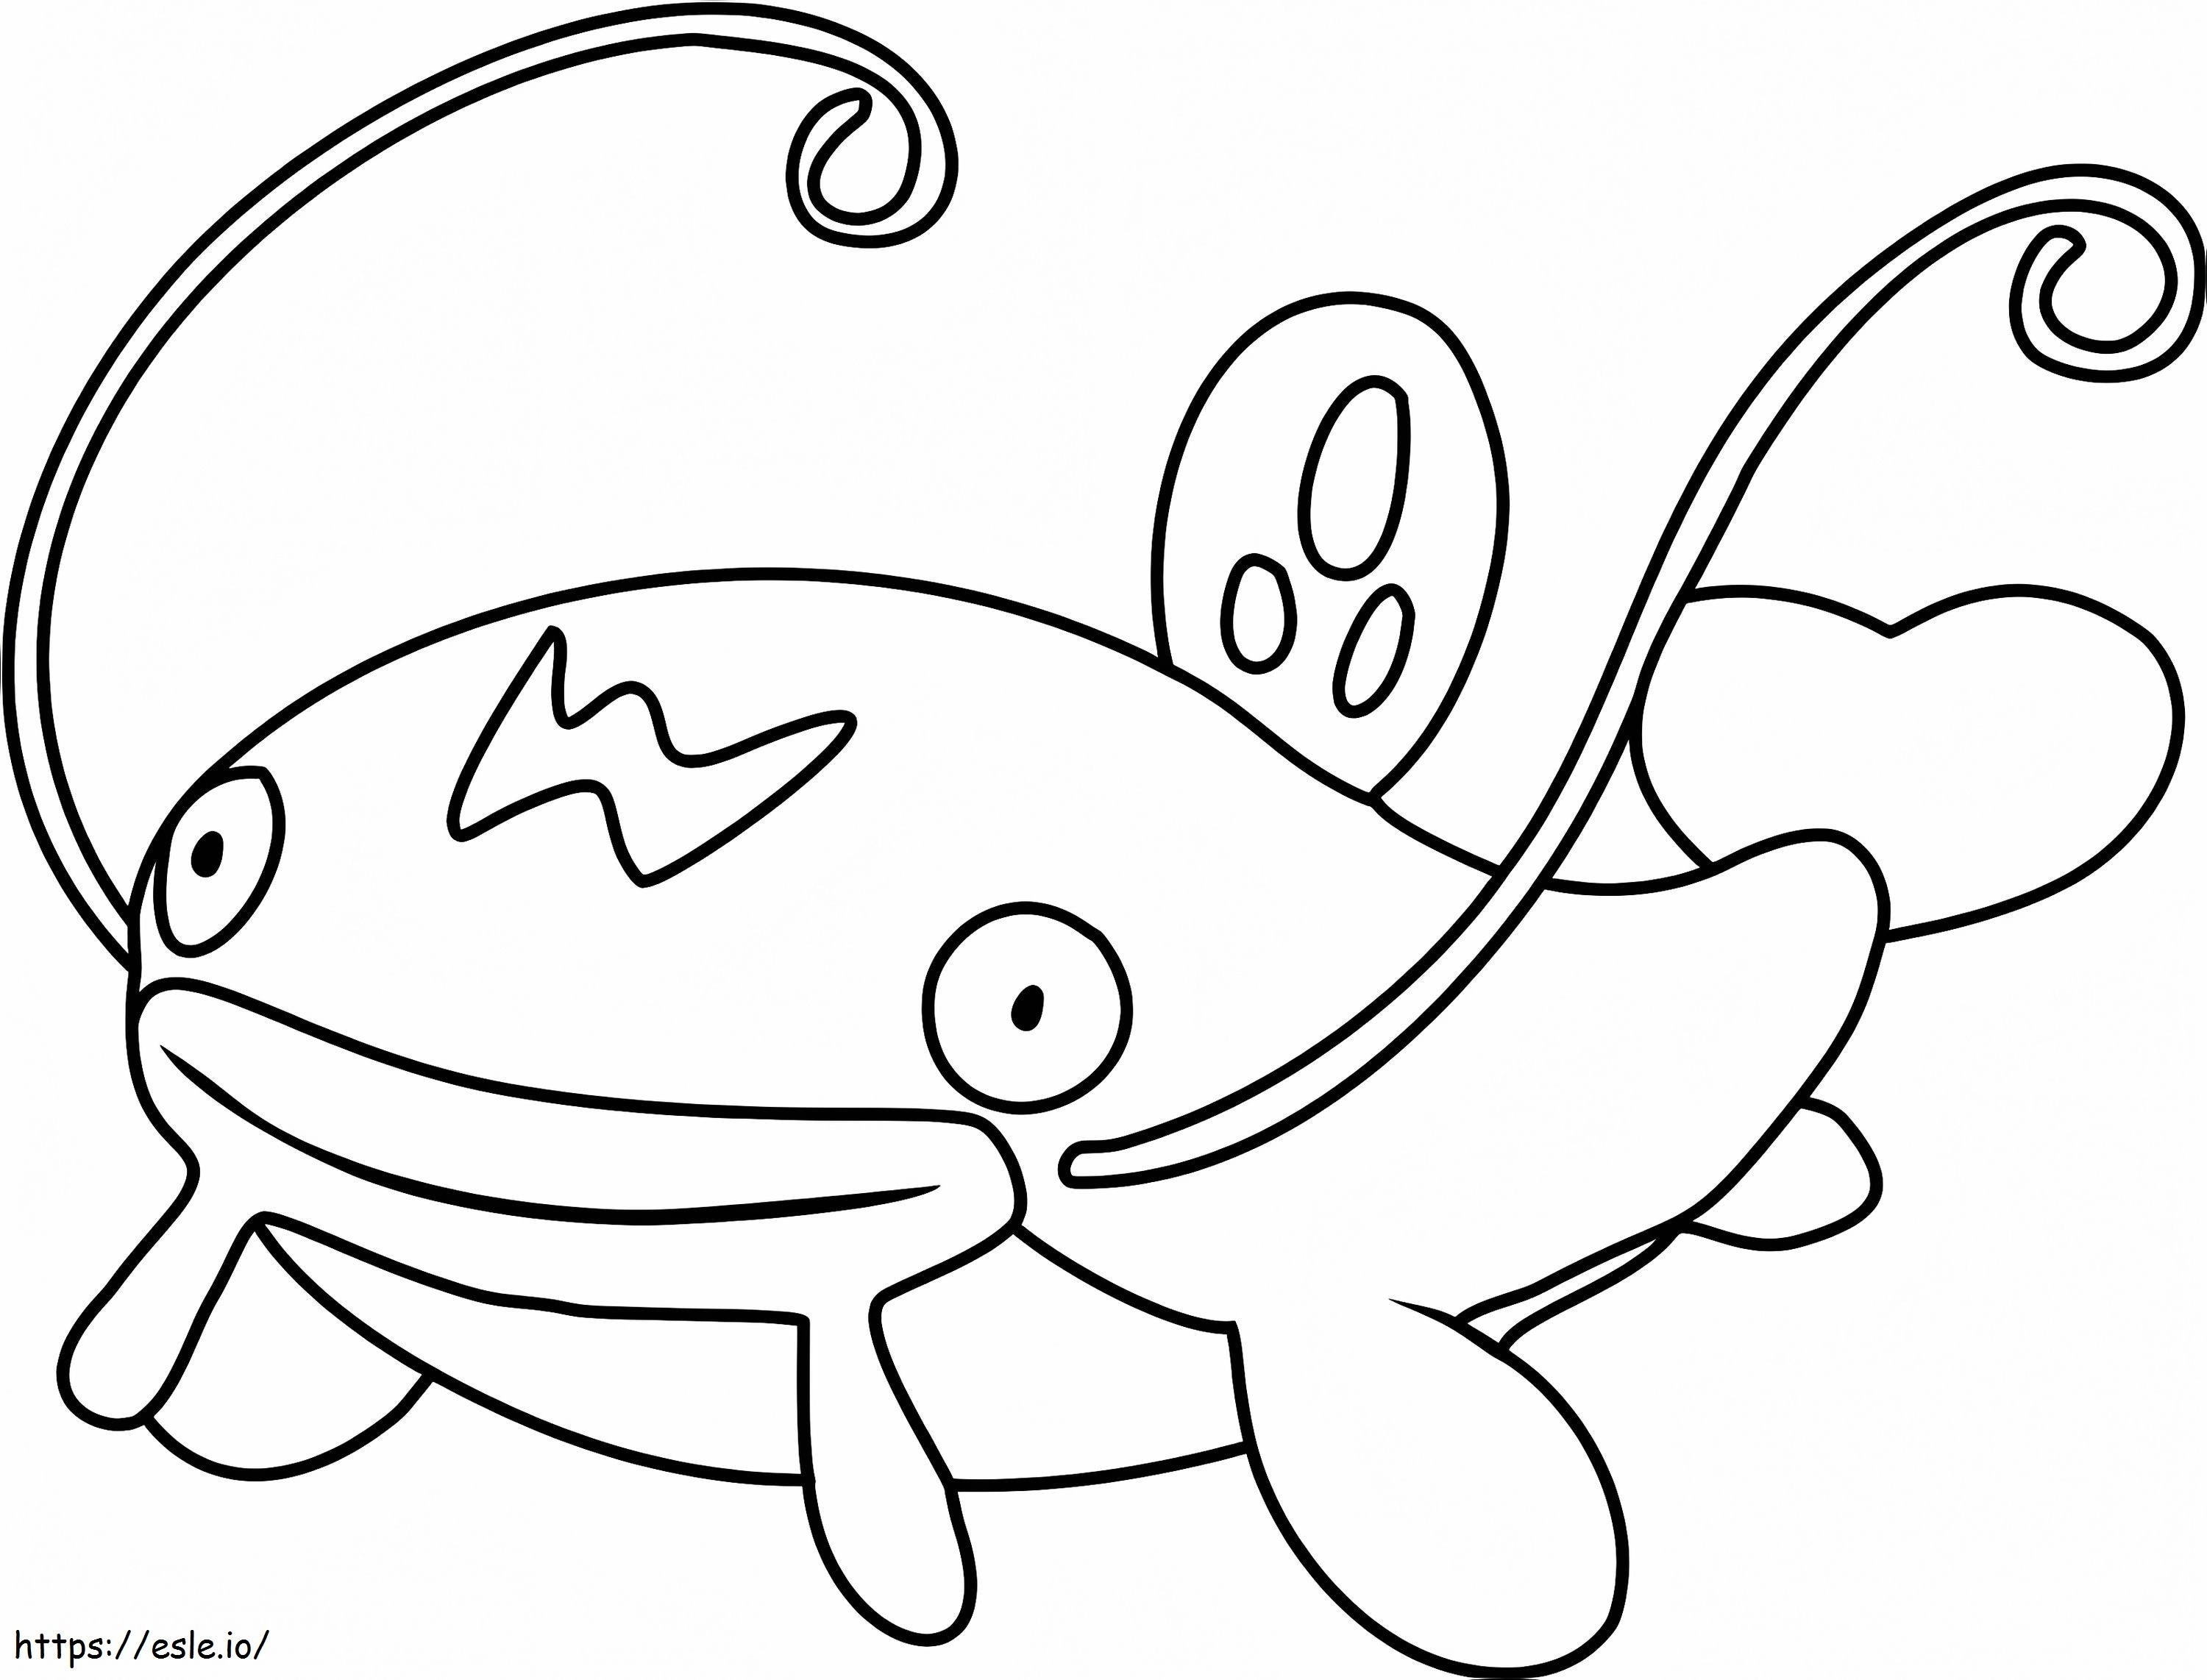 Coloriage Pokémon Whiscash Gen 3 à imprimer dessin